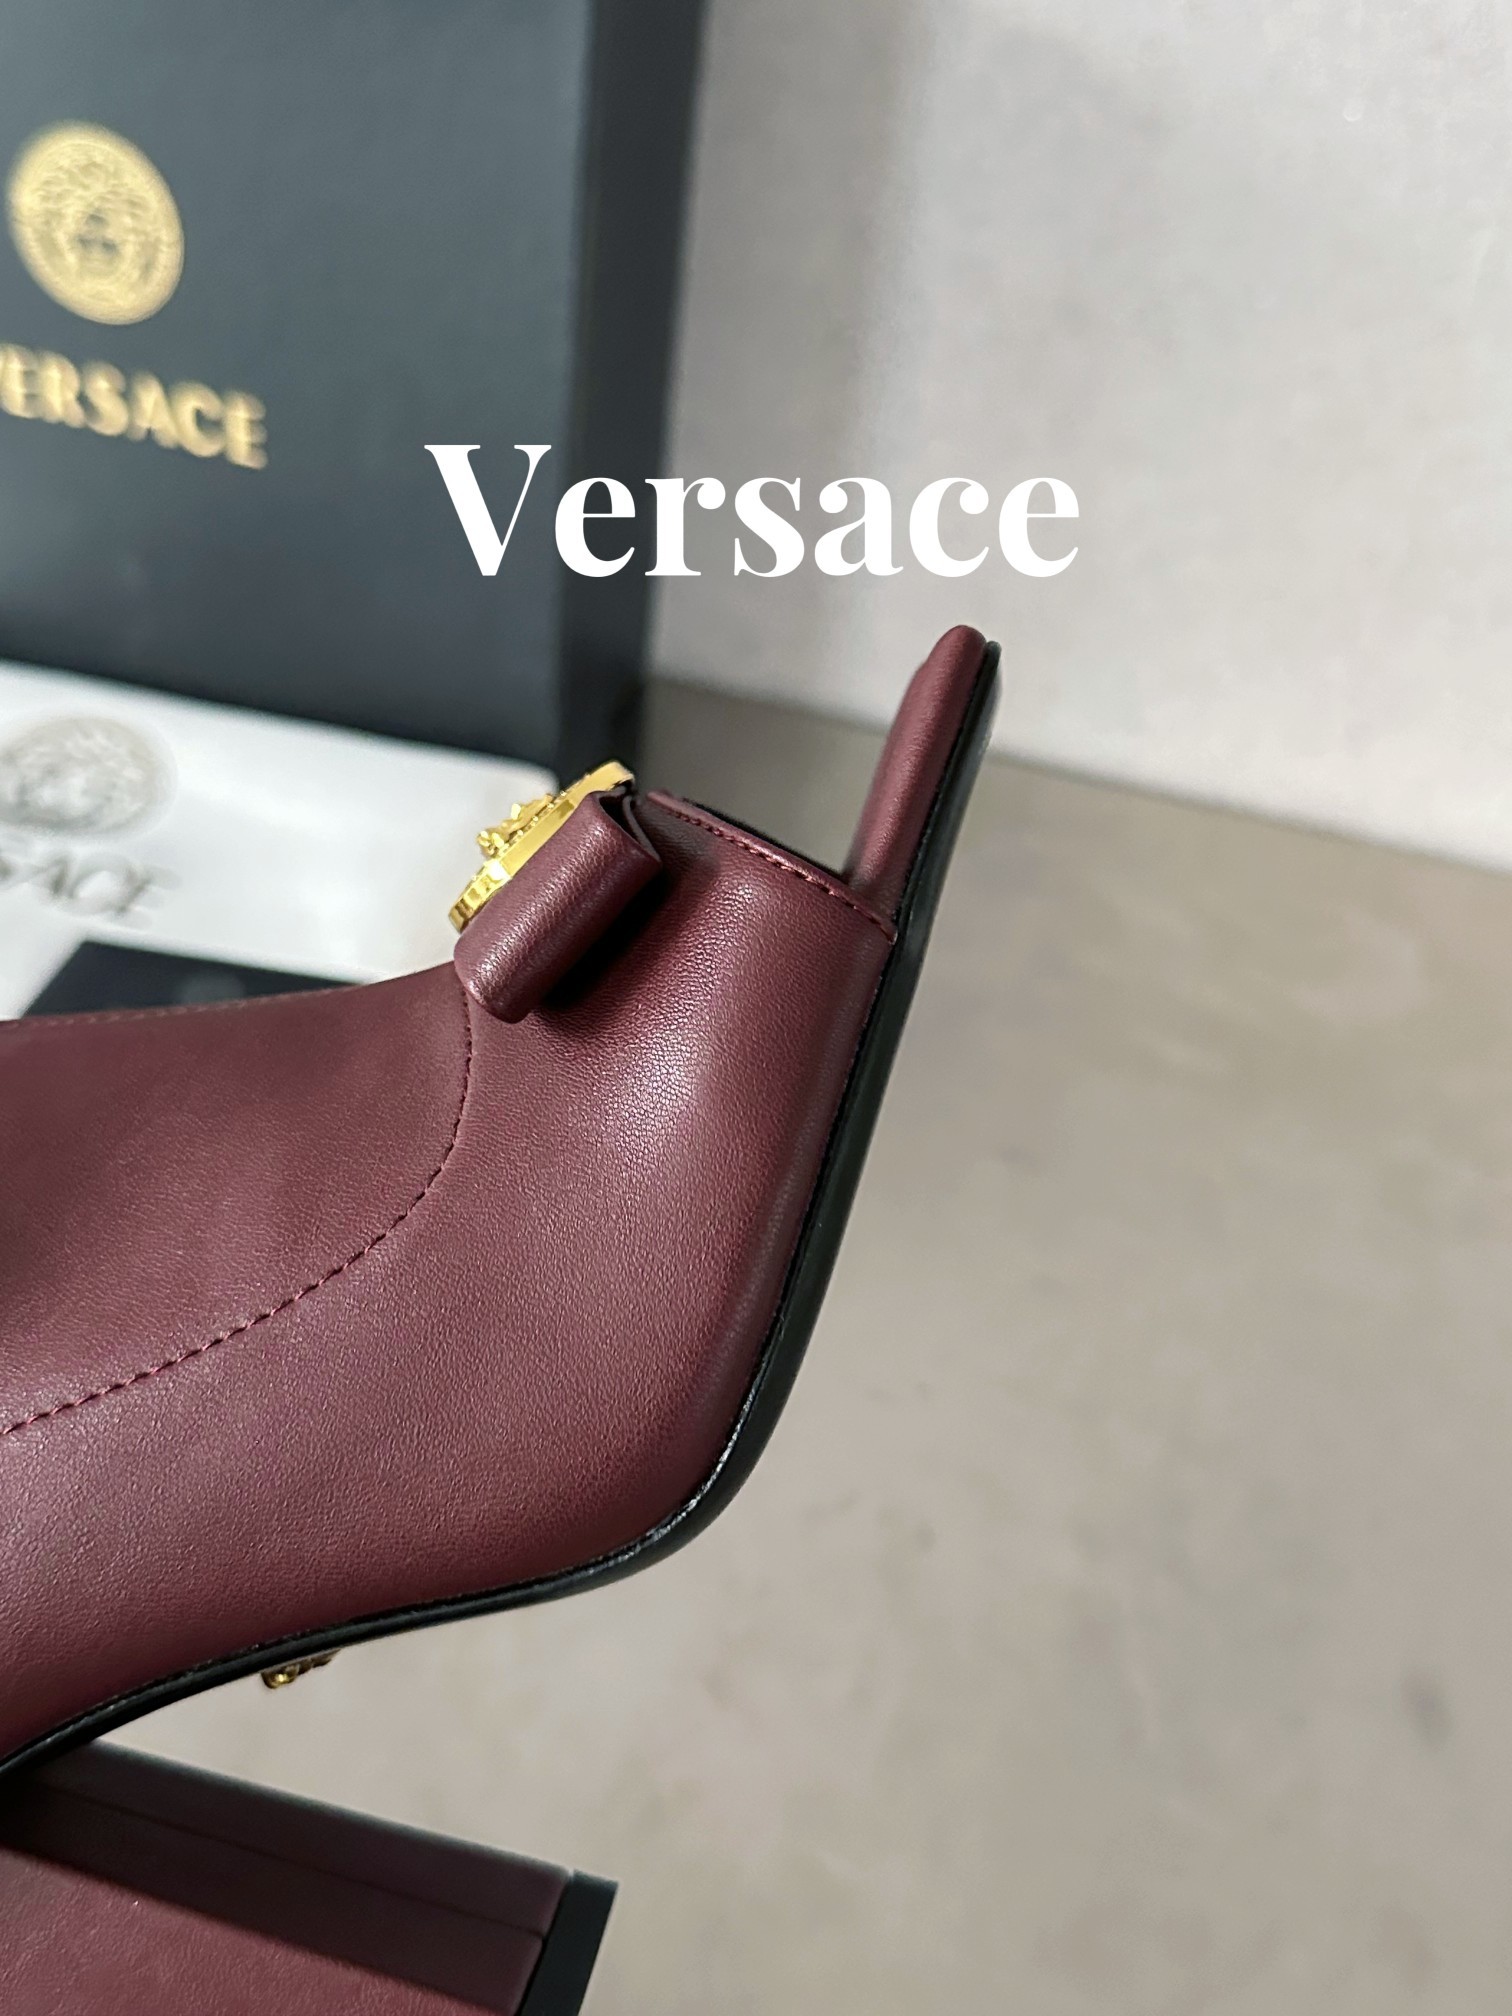 范思哲瓦萨琪Versace顶级版本范思哲/GIANNIRIBBON美杜莎方头短靴此款胶片制成的方头短靴采